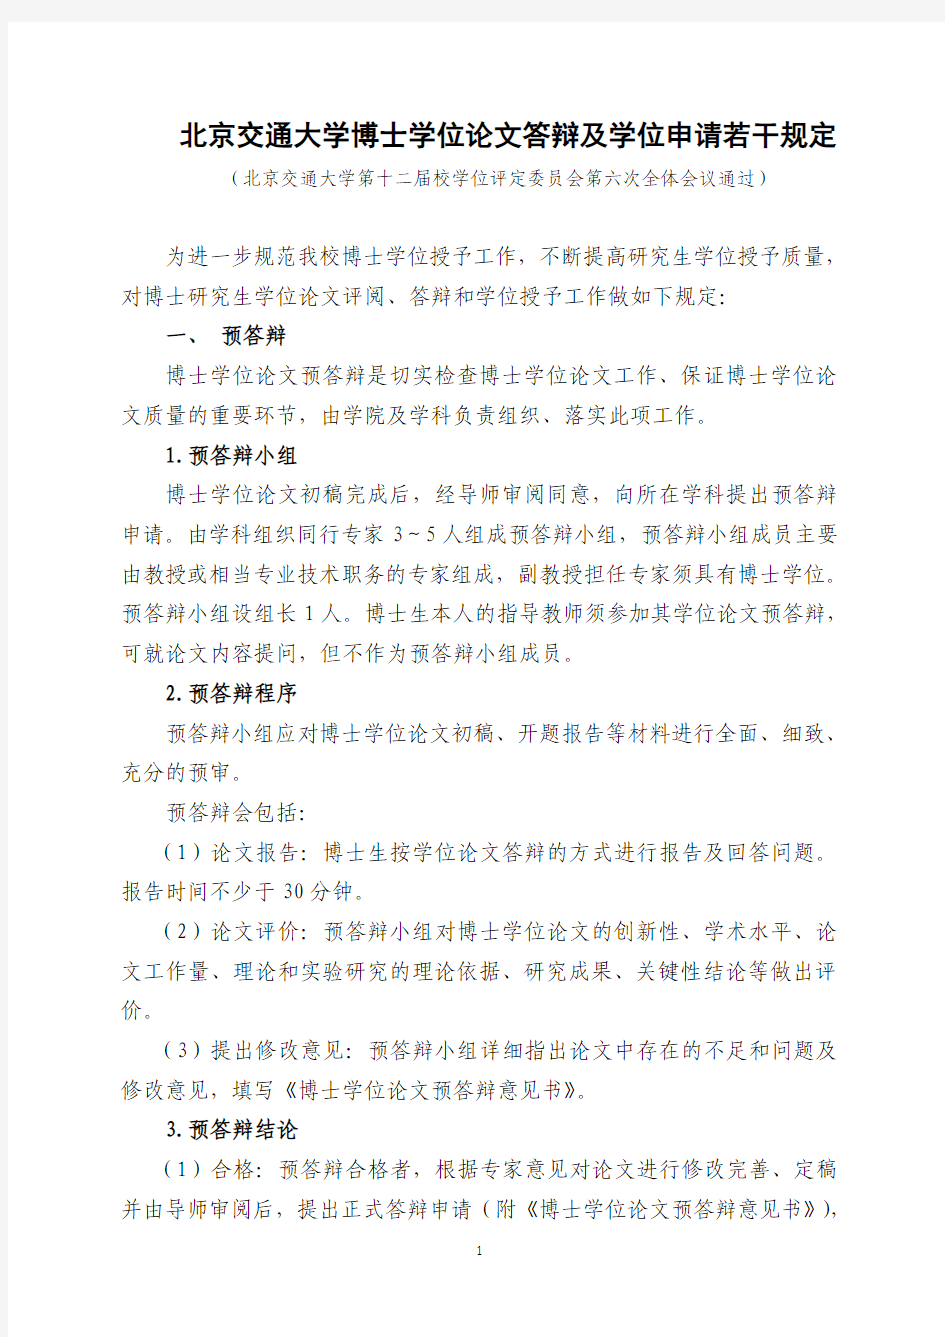 北京交通大学博士学位论文答辩及学位申请若干规定